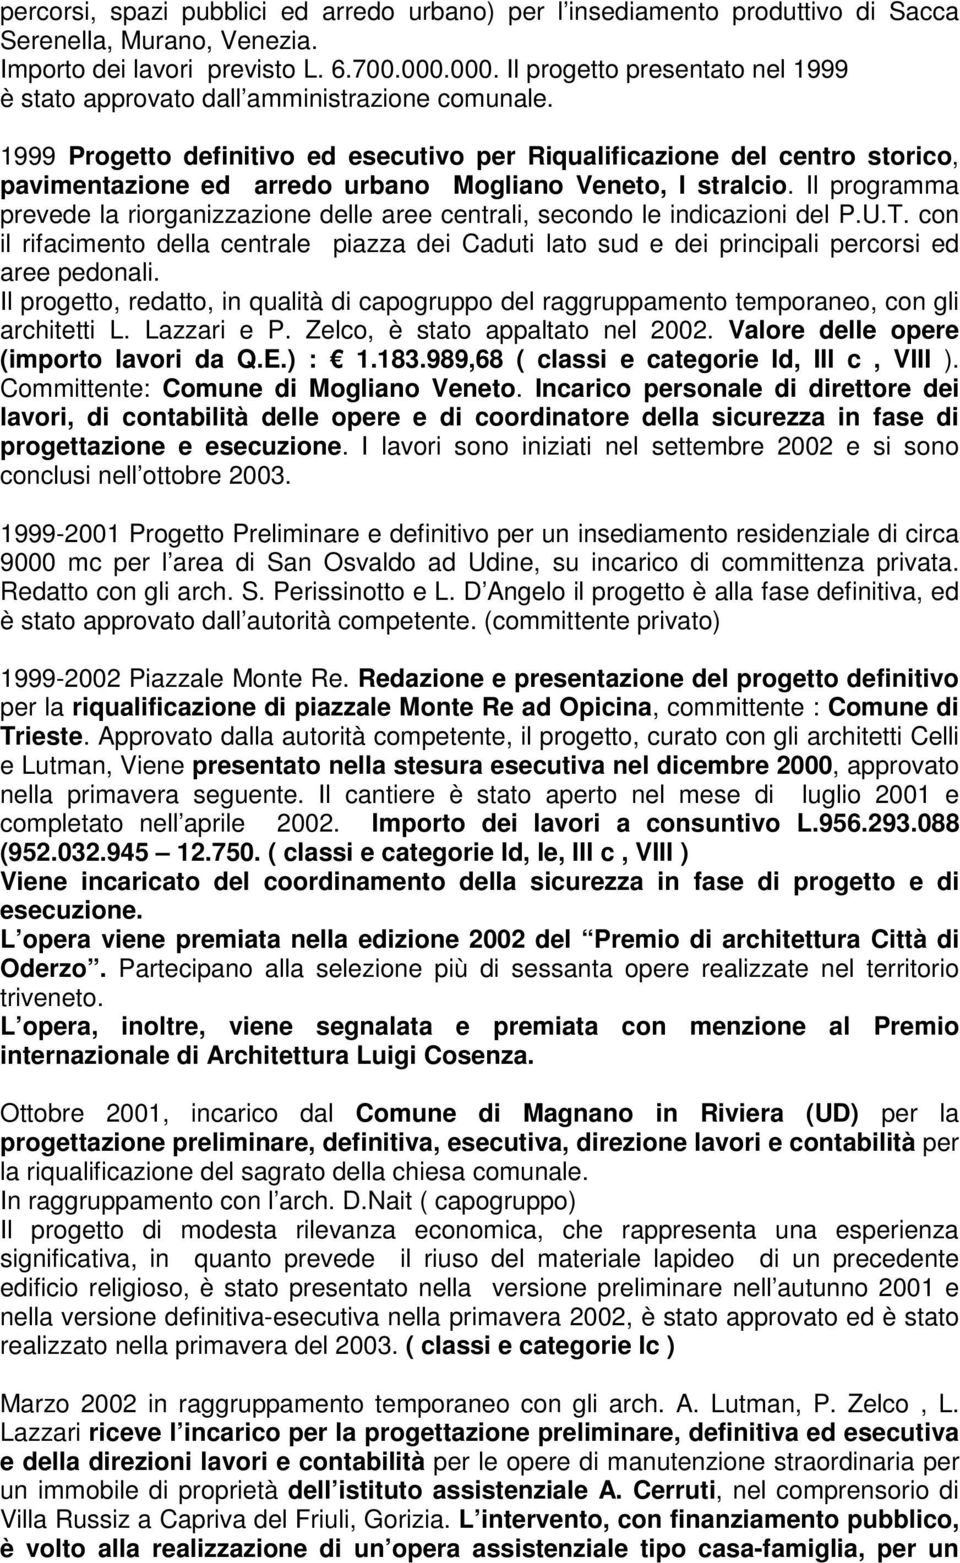 1999 Progetto definitivo ed esecutivo per Riqualificazione del centro storico, pavimentazione ed arredo urbano Mogliano Veneto, I stralcio.